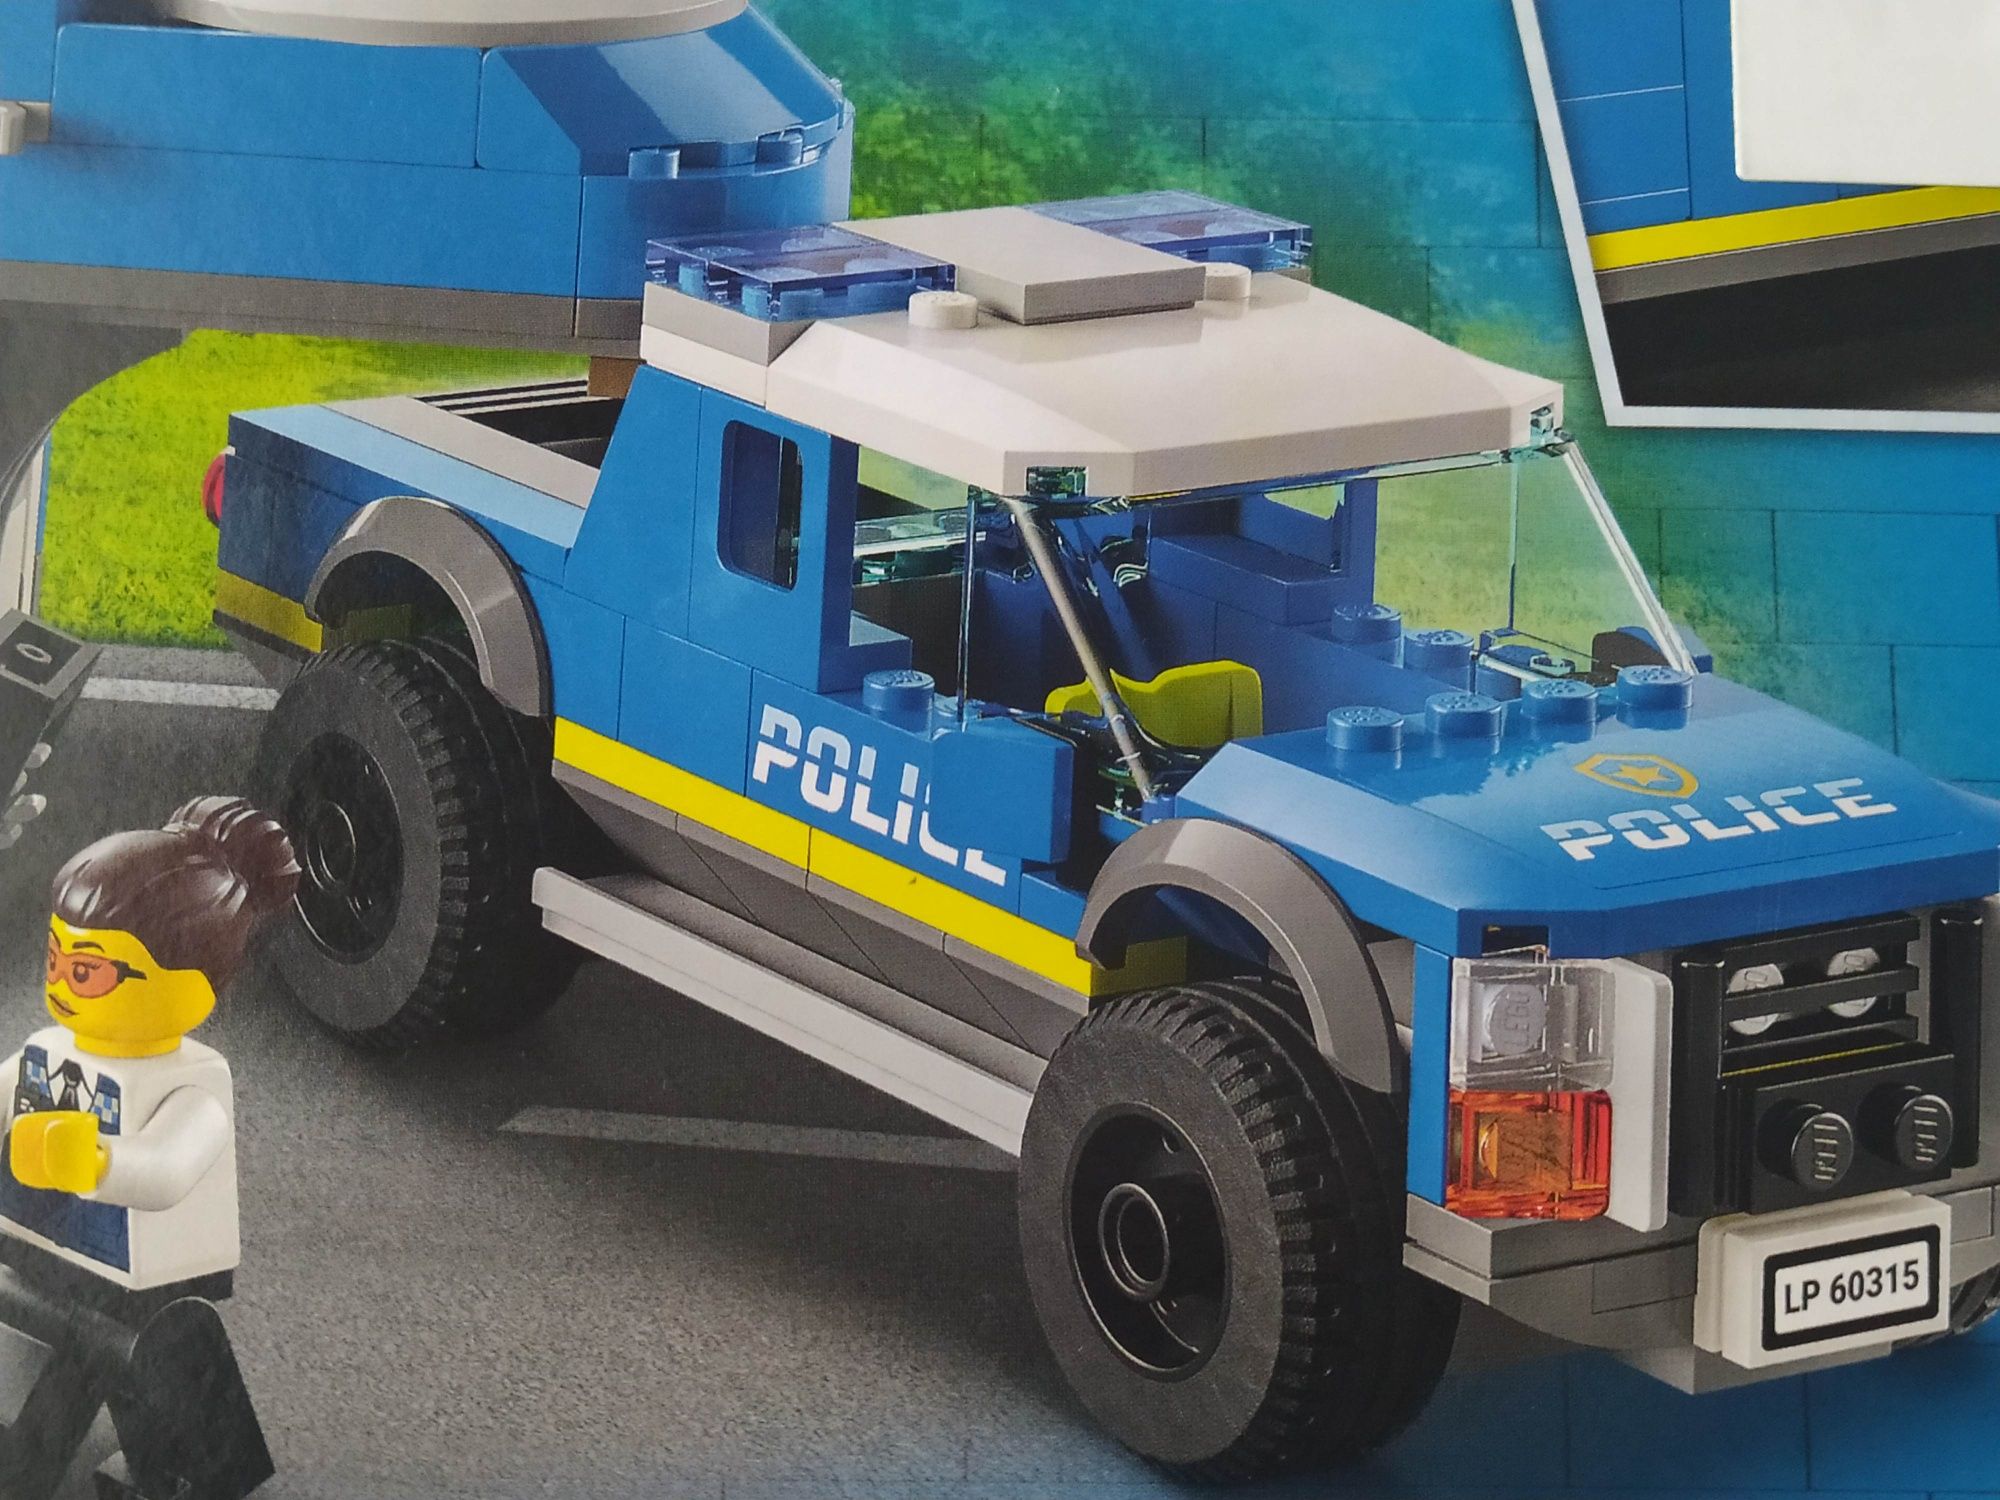 LEGO City, Mobilne centrum dowodzenia policji, stan Bardzo Dobry